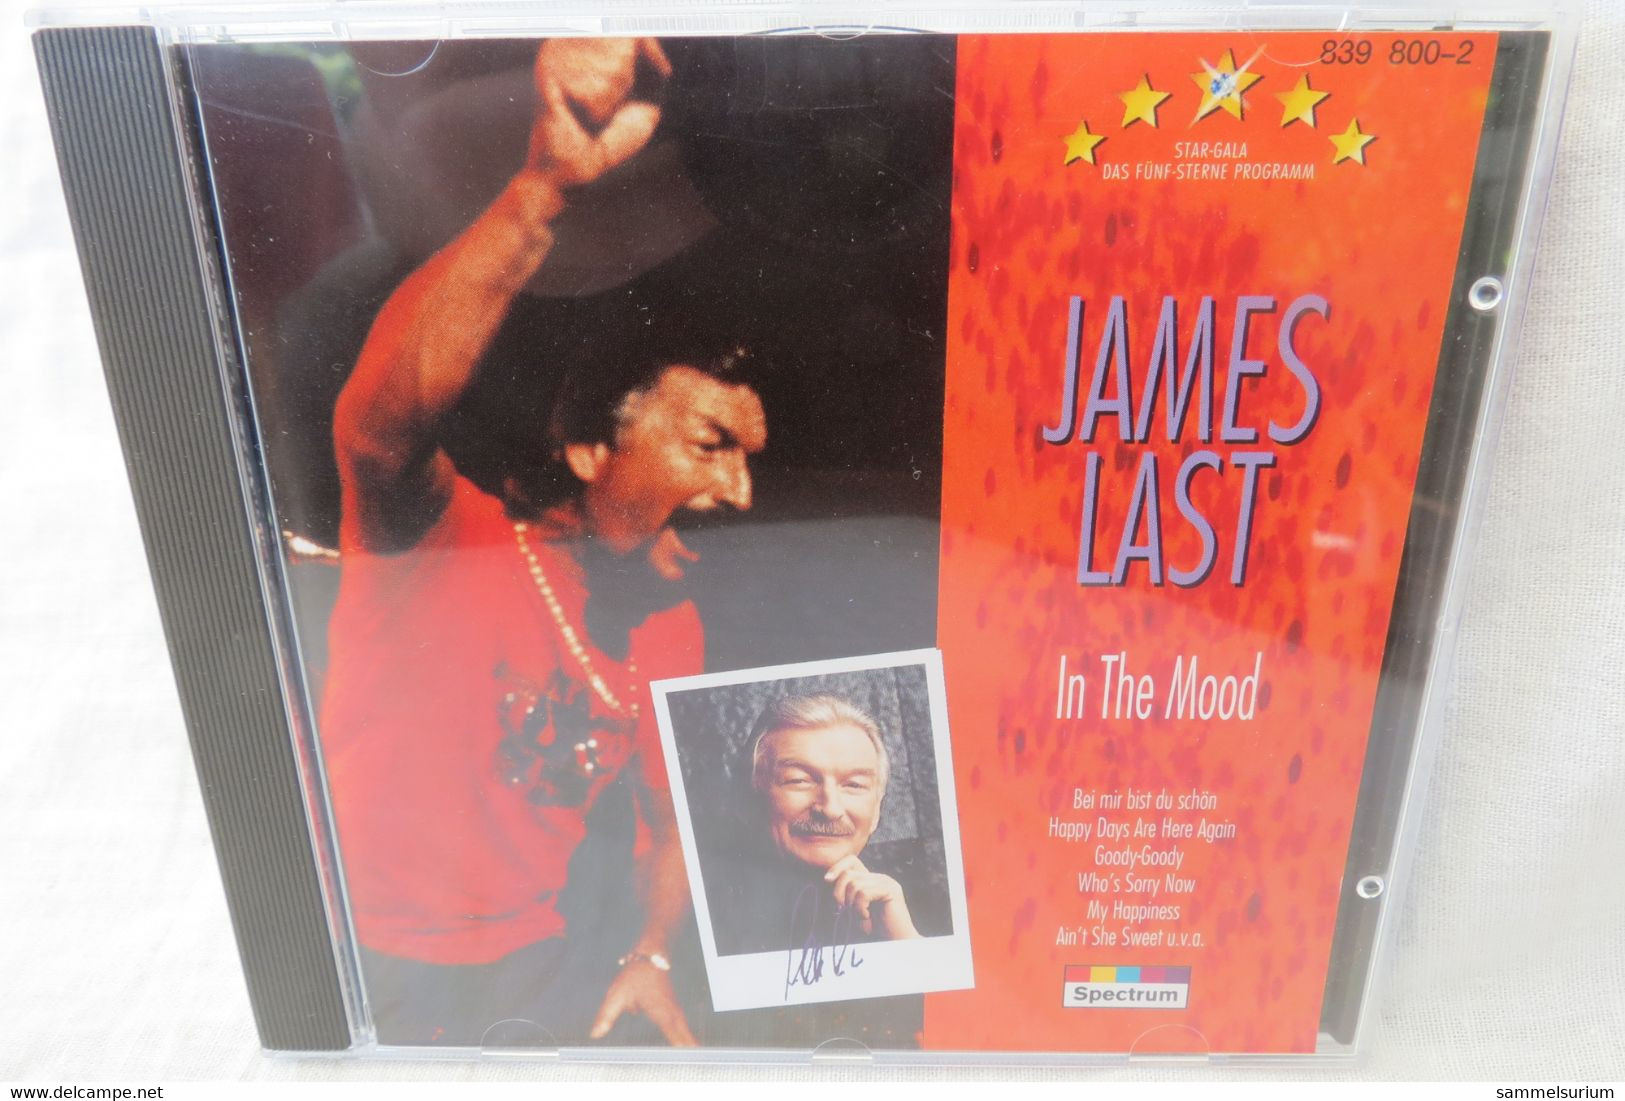 3 CDs James Last "Meisterwerke" - Weihnachtslieder